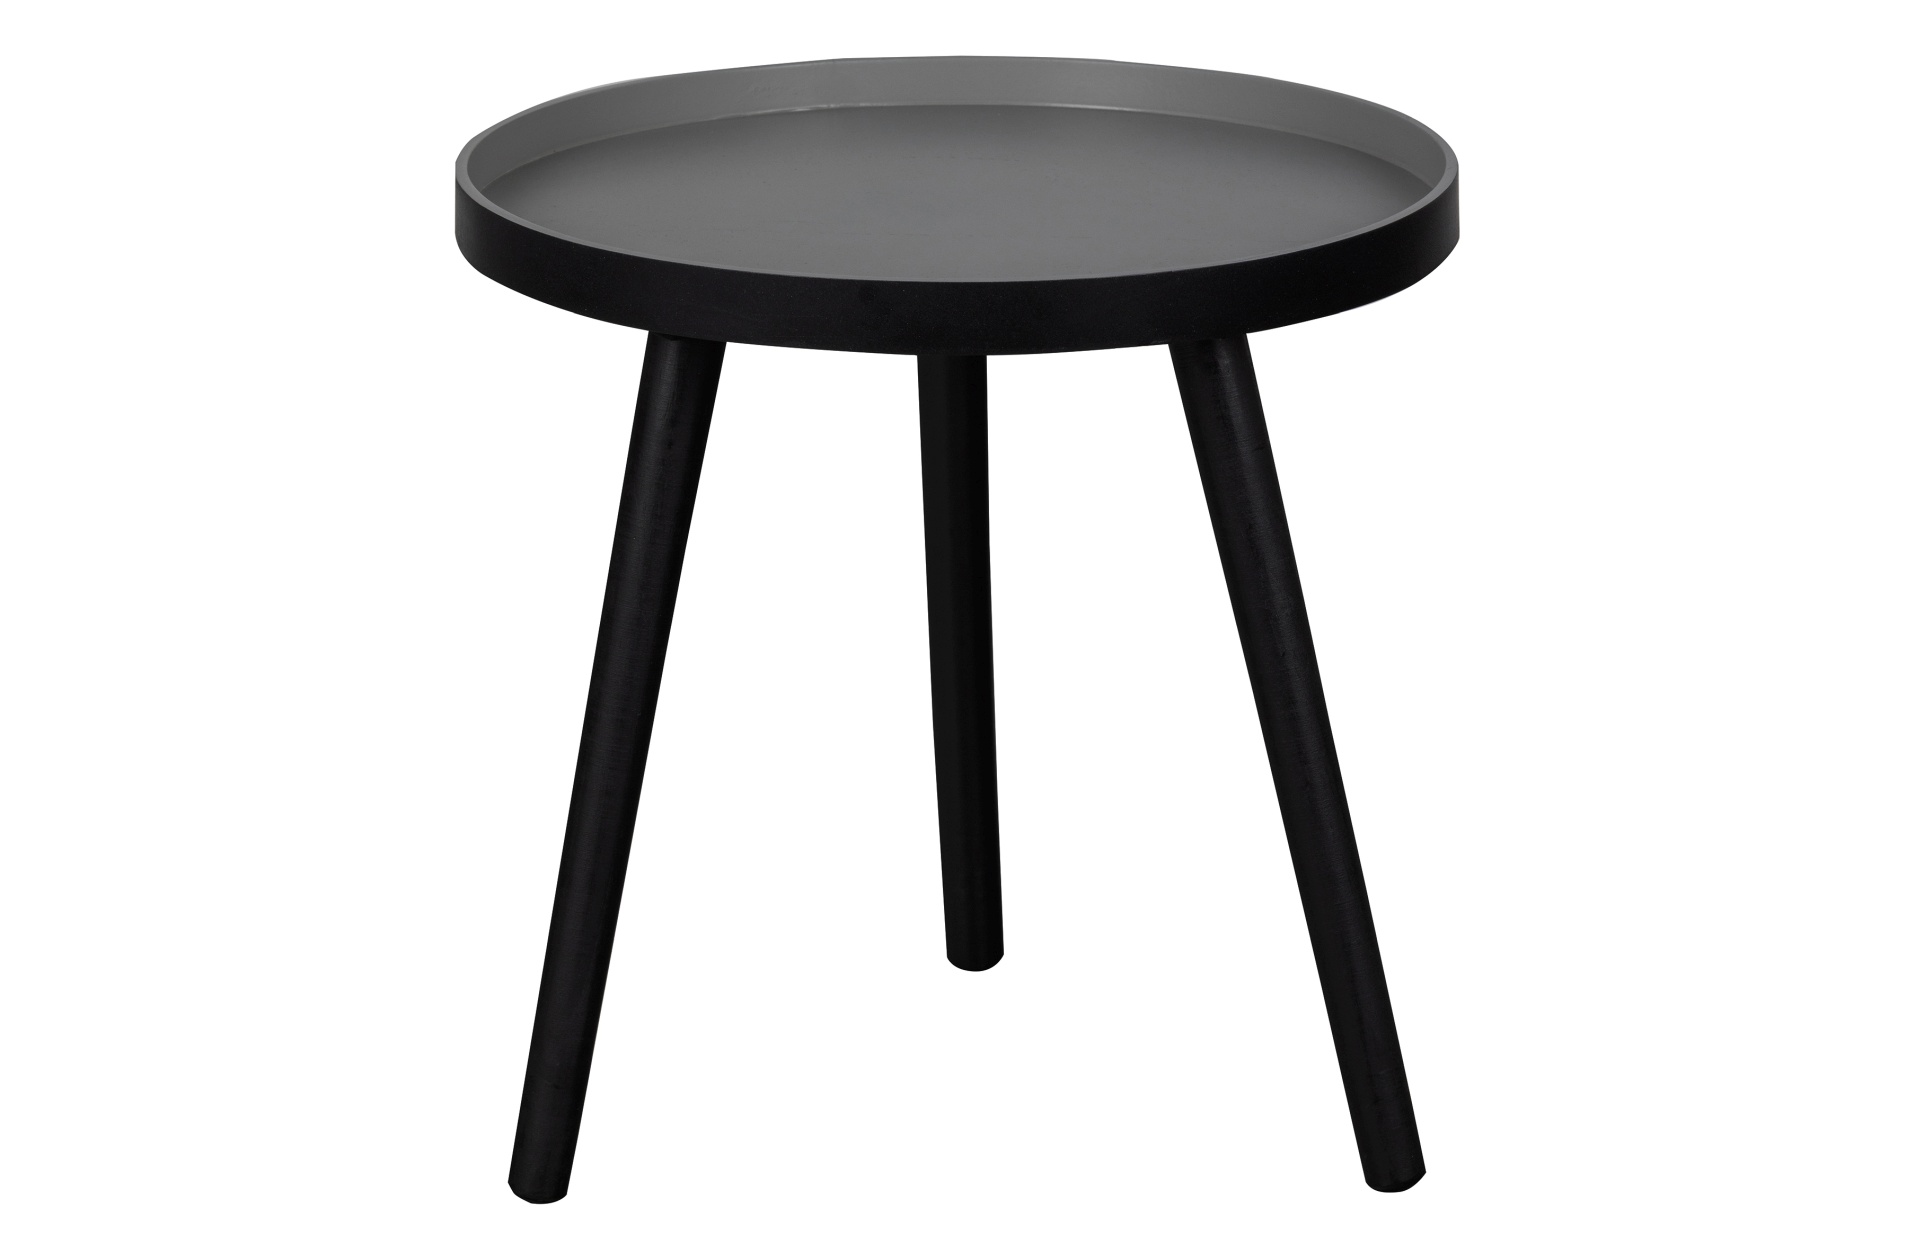 Der Couchtisch Sasha besitzt eine runde Form. Der Tisch ist in einem schwarzem Farbton, nur die Tischplatte ist natürlich gehalten und schafft einen schönen Kontrast.